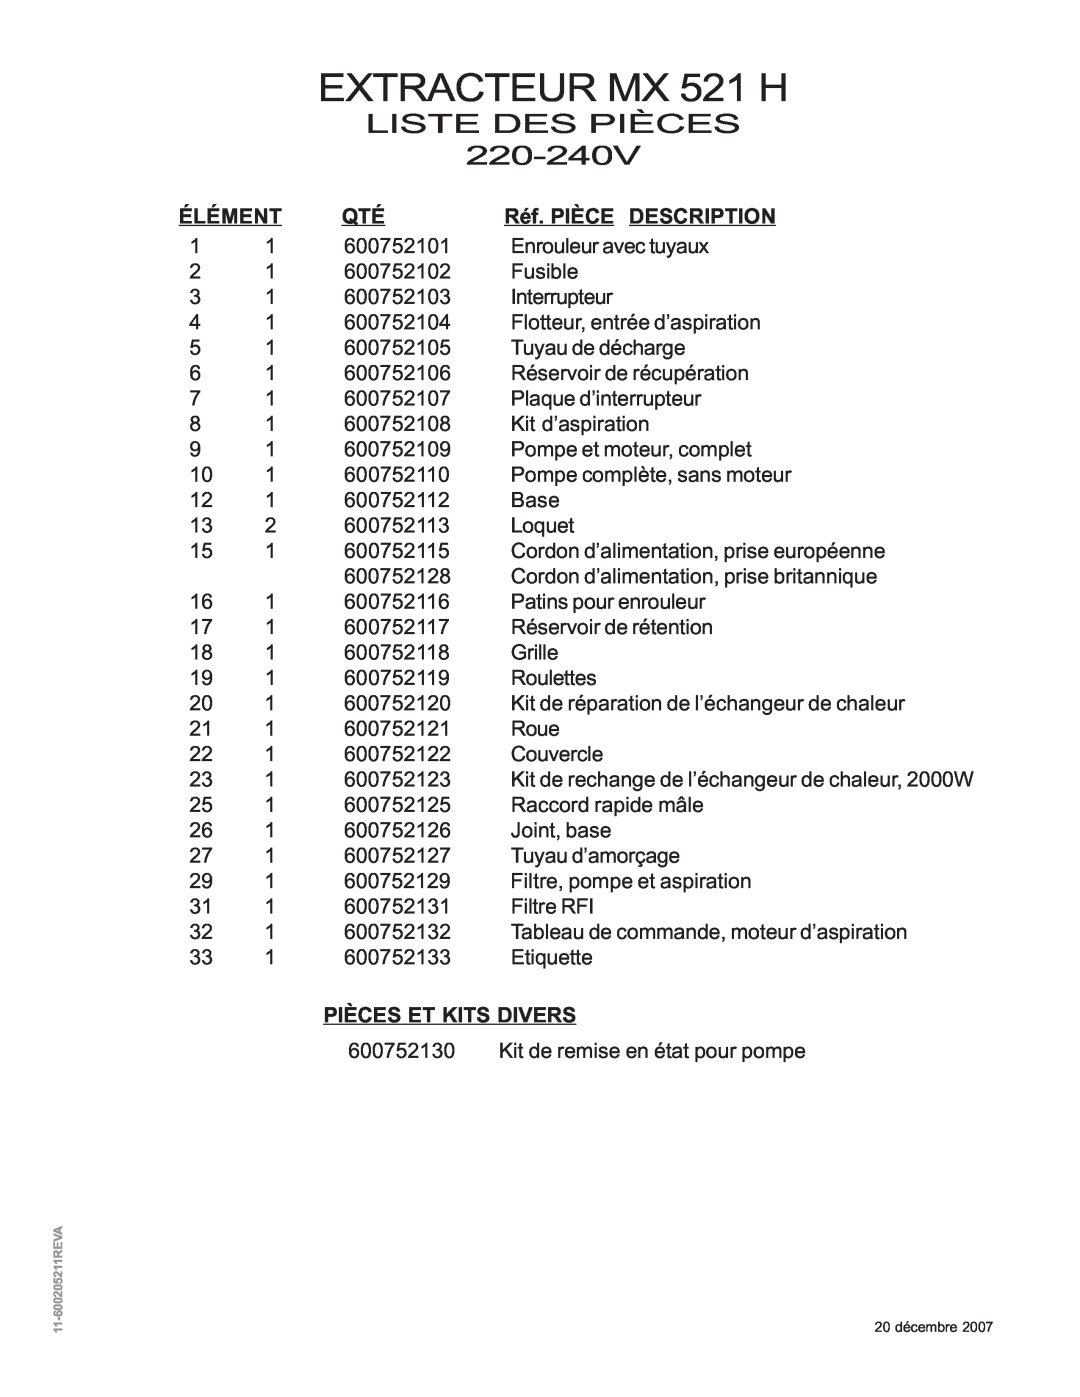 Nilfisk-ALTO manual EXTRACTEUR MX 521 H, Liste Des Pièces, Élément, Réf. PIÈCE DESCRIPTION, Pièces Et Kits Divers 